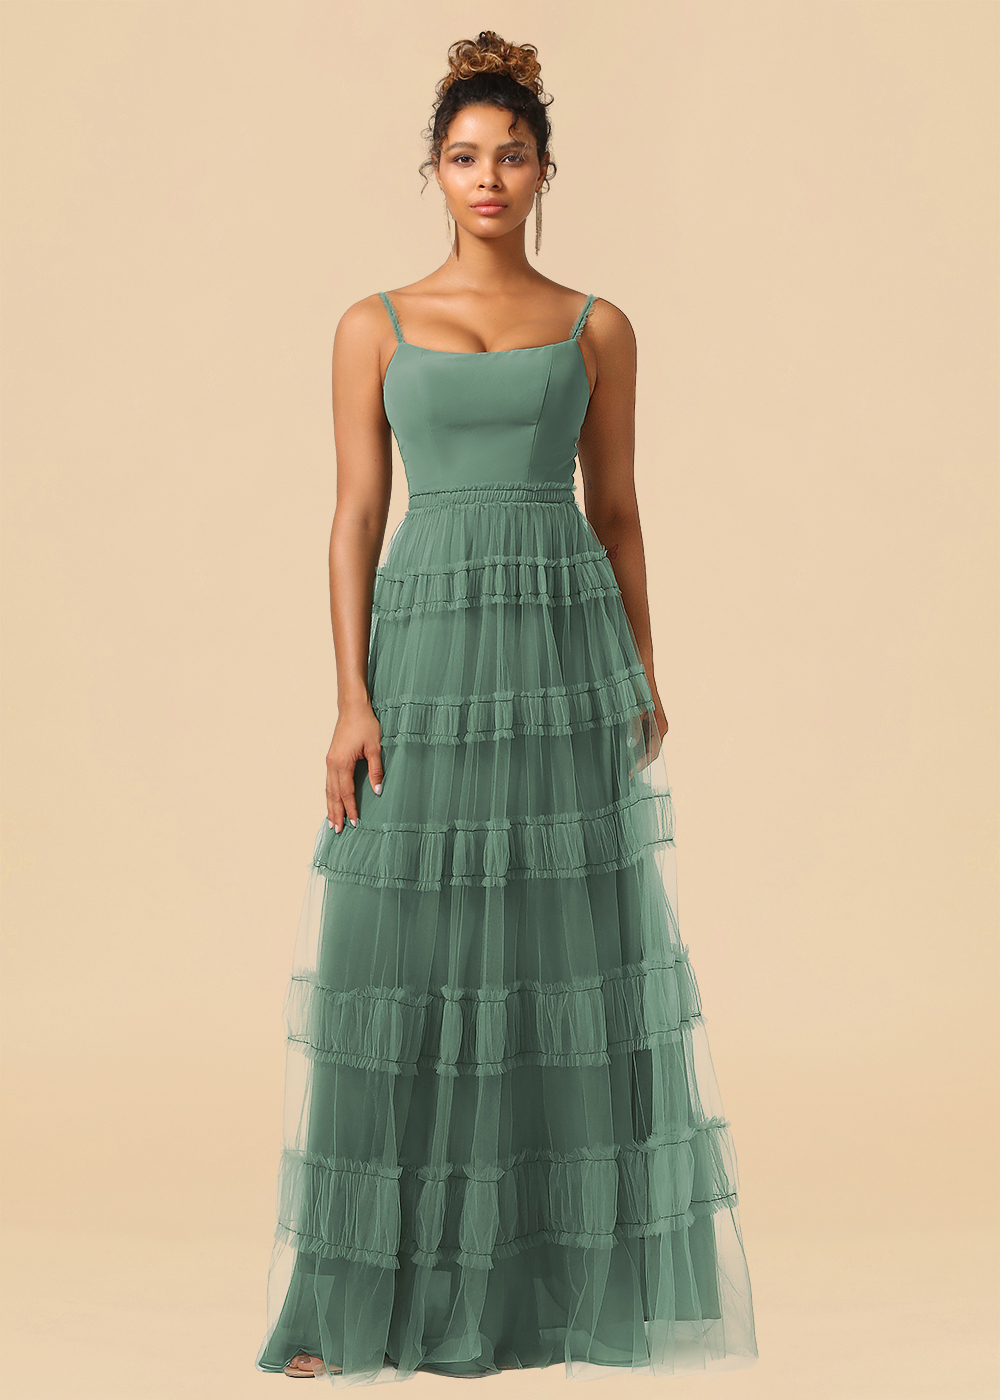 Tulle Spaghetti Strap A-line Floor Length Bridesmaid Dress